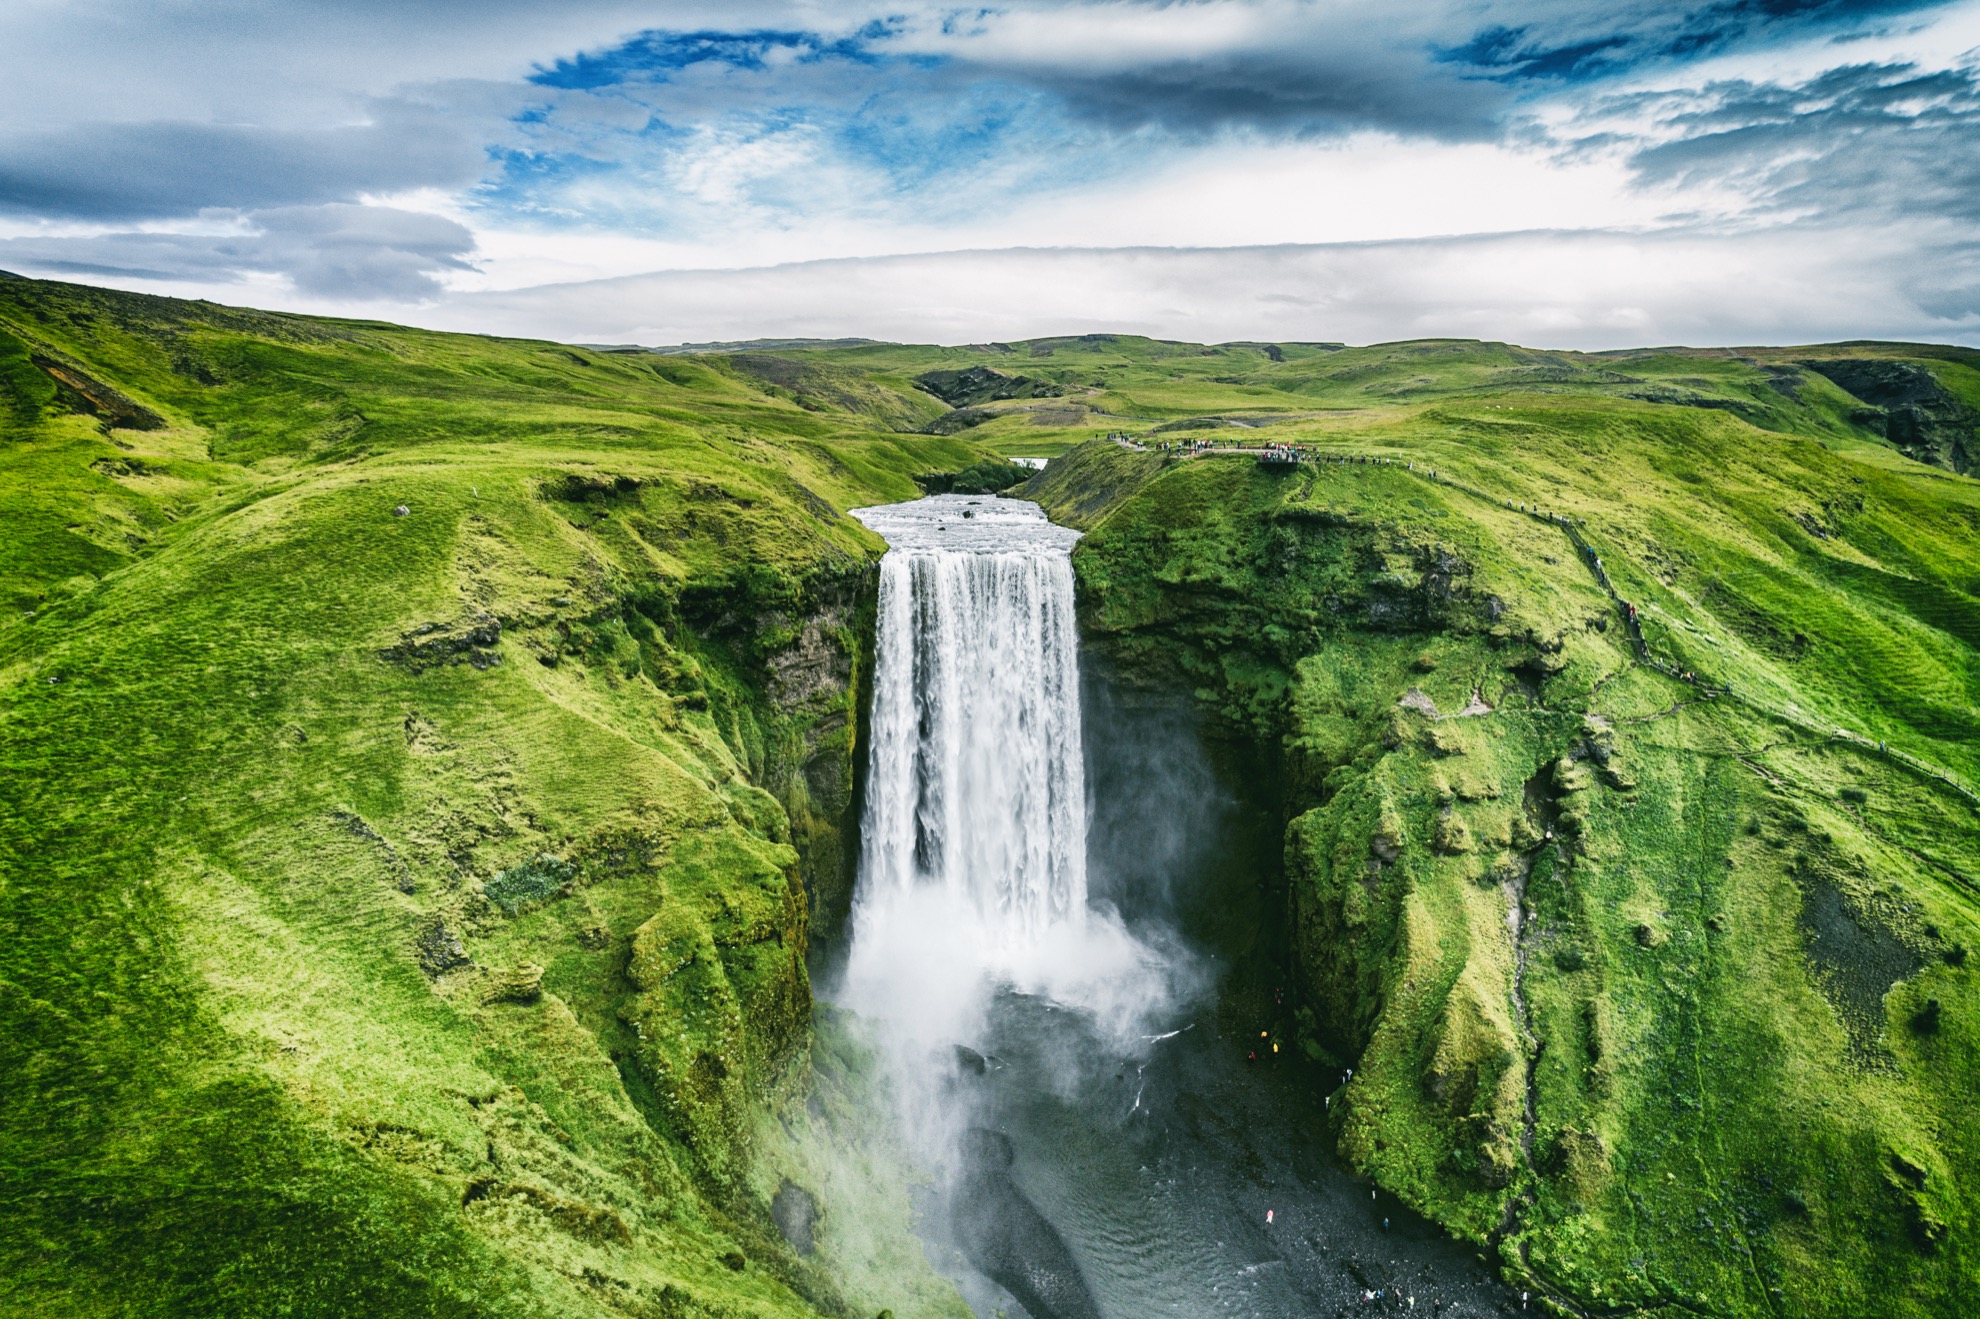 La leyenda dice que la impresionante cascada de Skógafoss de Islandia es el hogar del tesoro escondido - 1